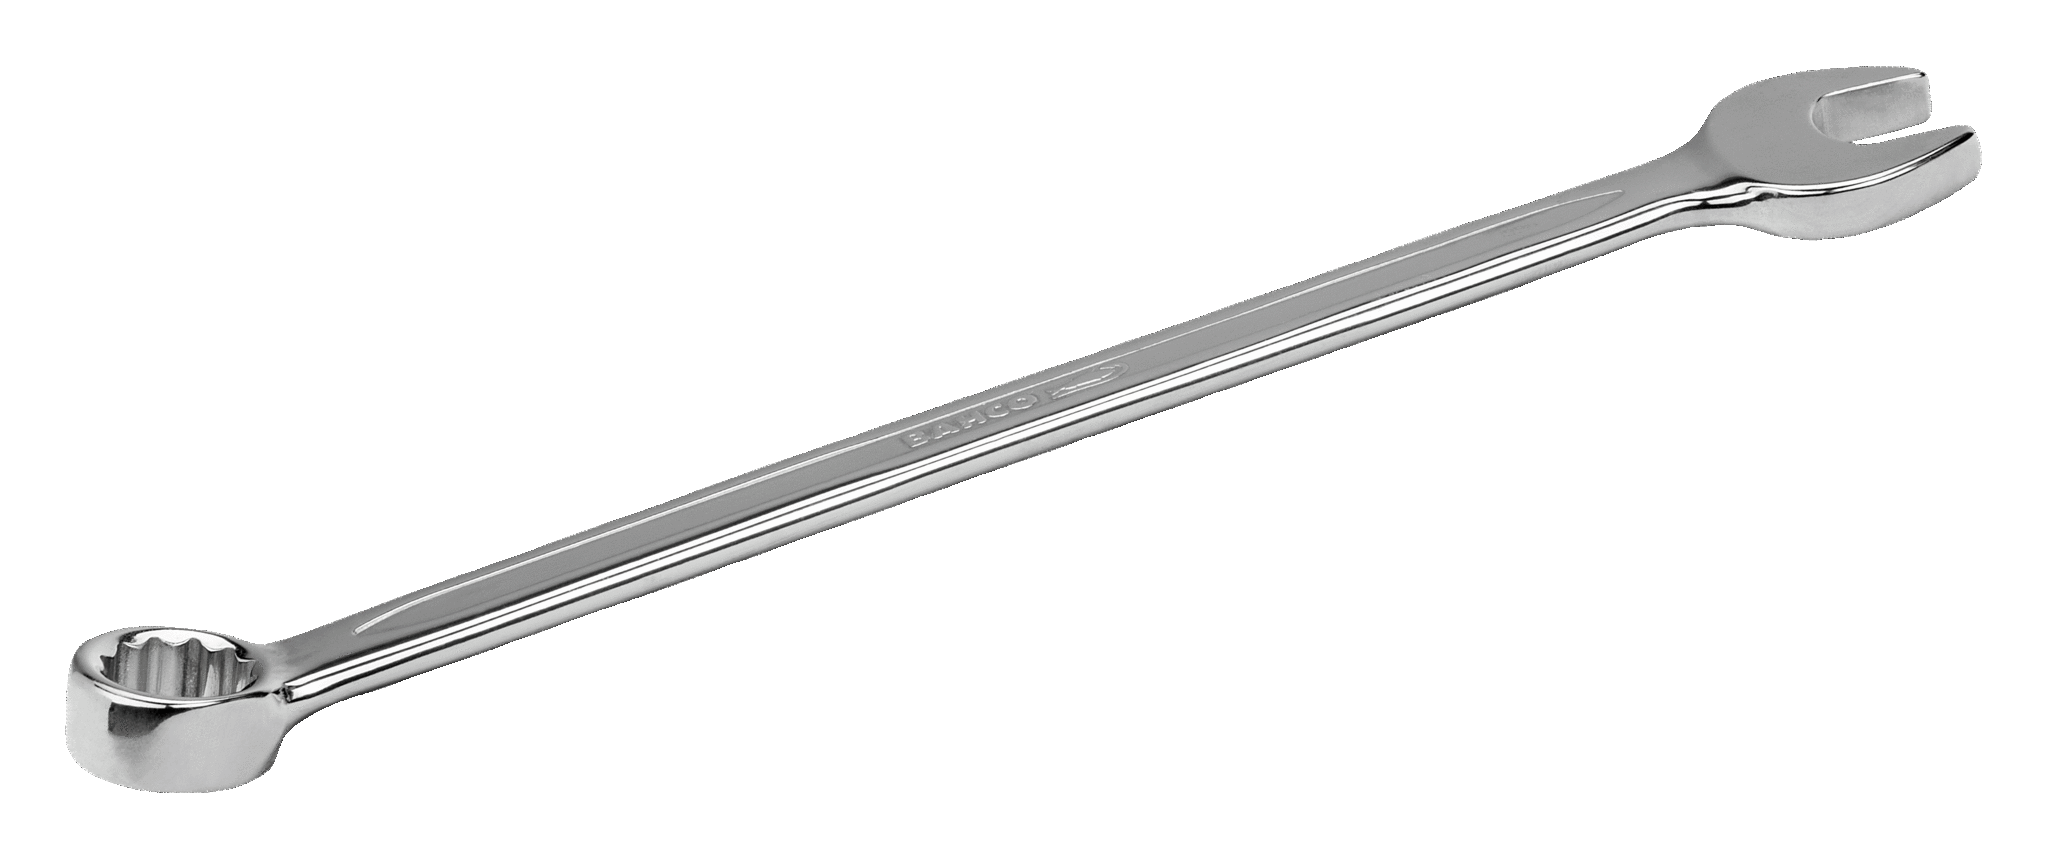 Комбинированный ключ дюймовых размеров, с изгибом, удлиненного типа BAHCO 11Z-7/16